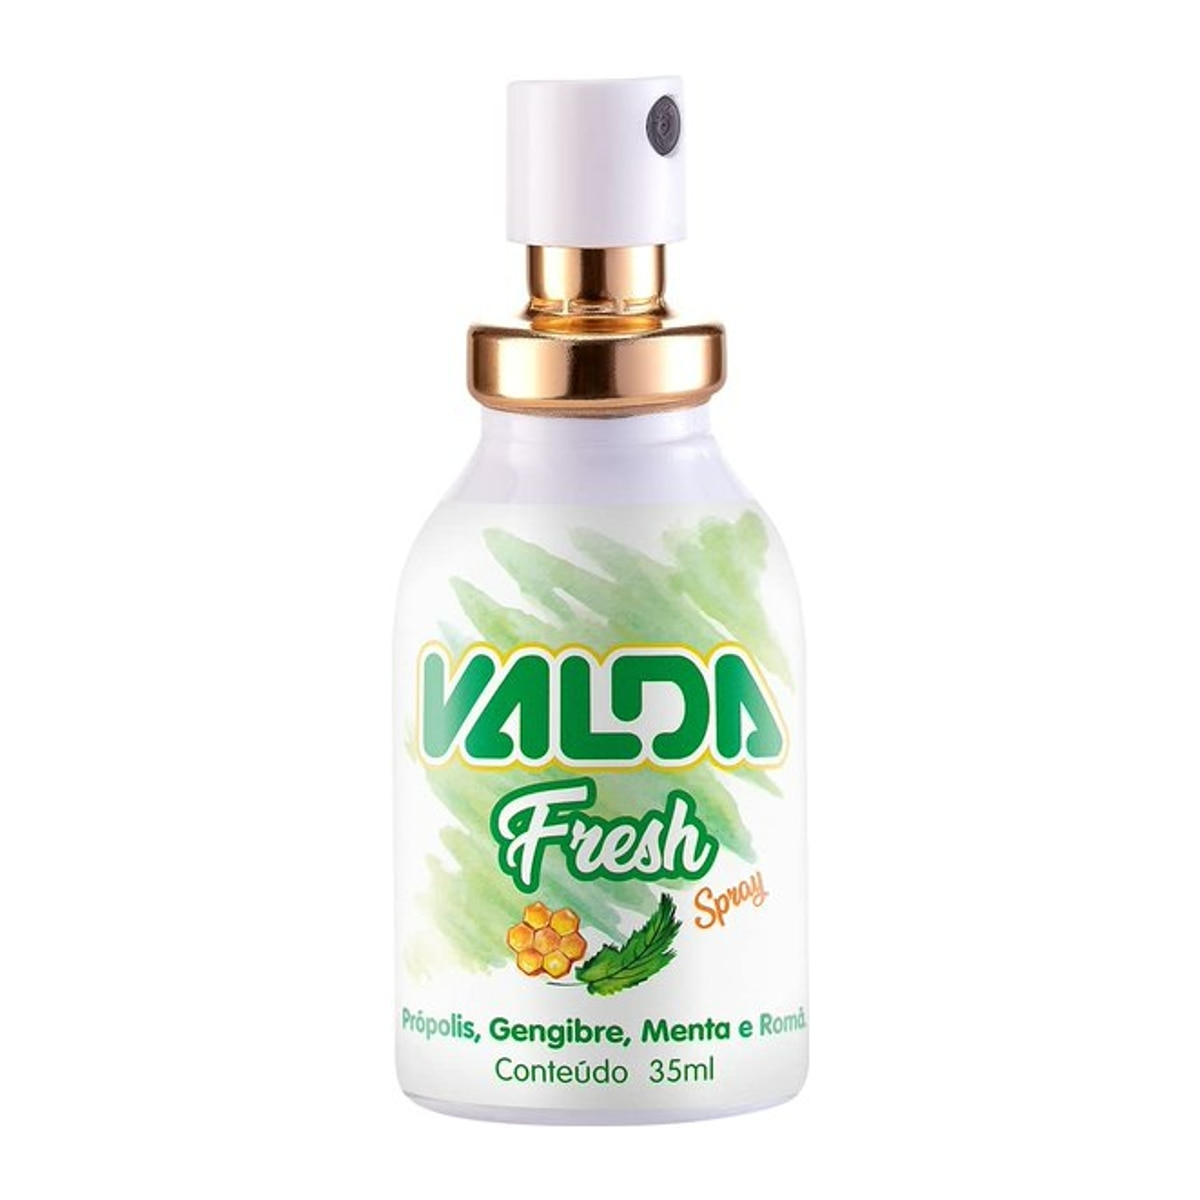 Valda Spray Fresh Sabor Propolis, Gengibre, Menta e Roma 35ml